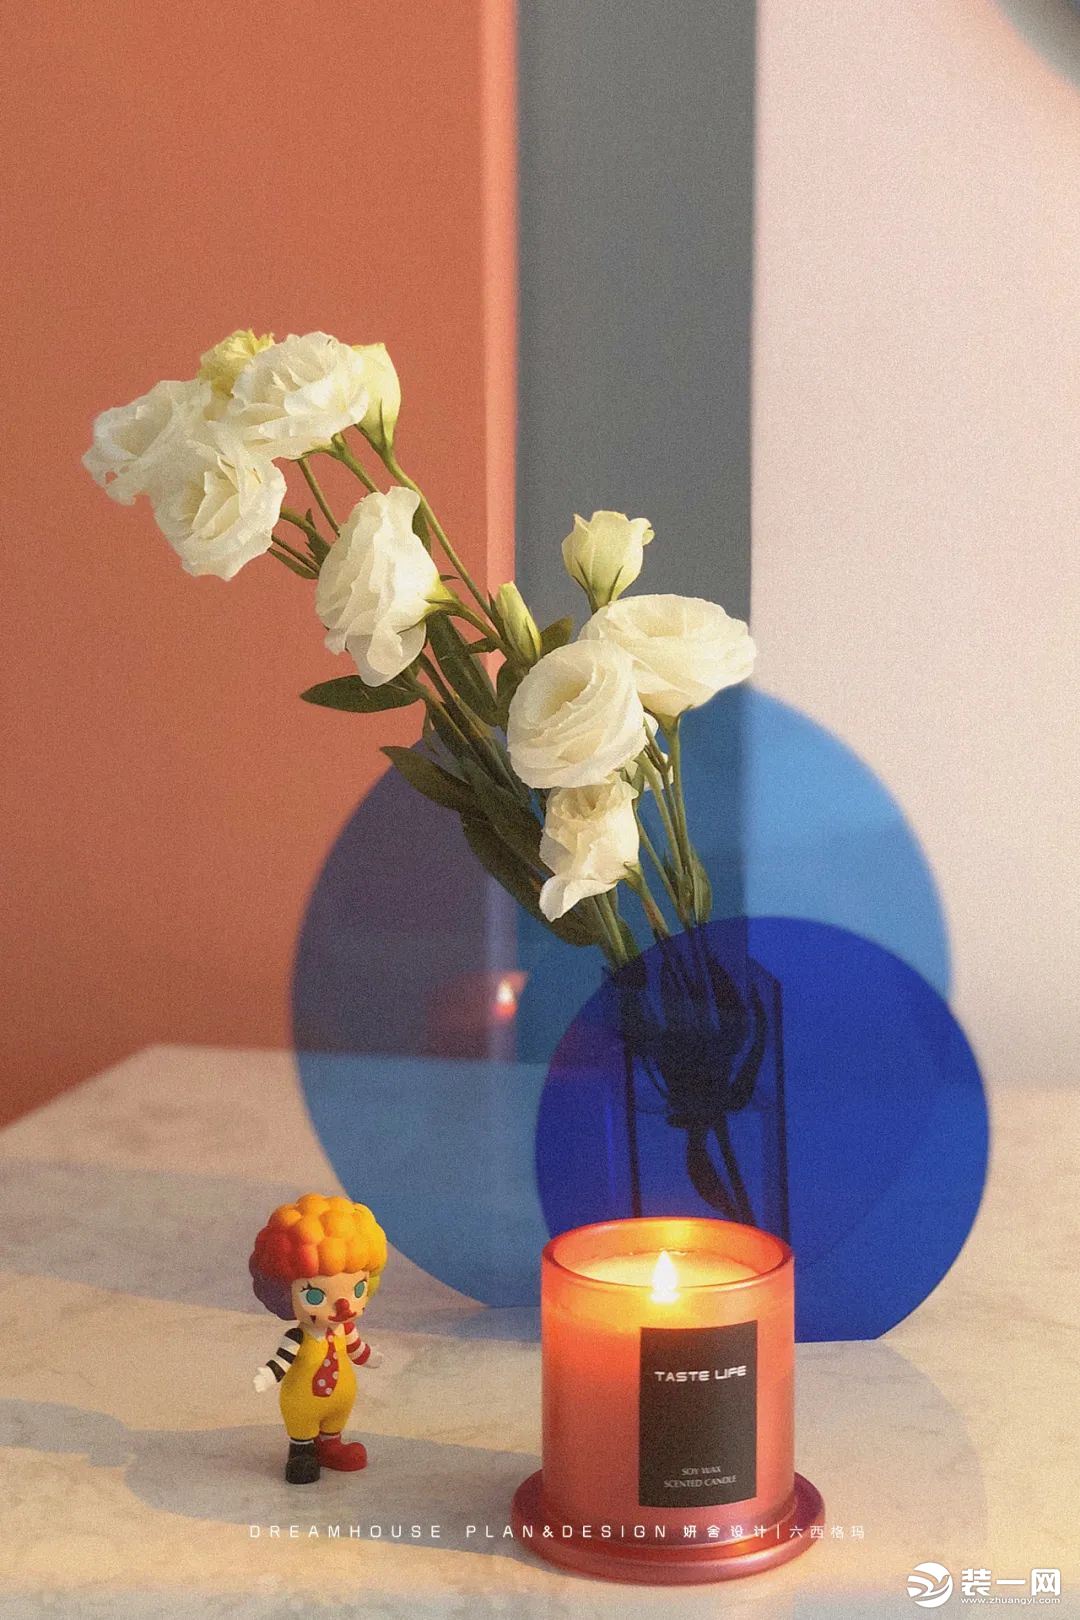 大理石餐桌旁边放上一盏落日灯，搭配鲜花、香薰蜡烛和小丑泡泡马特的摆件，展现独有浪漫的瞬间赋予餐厅浓郁